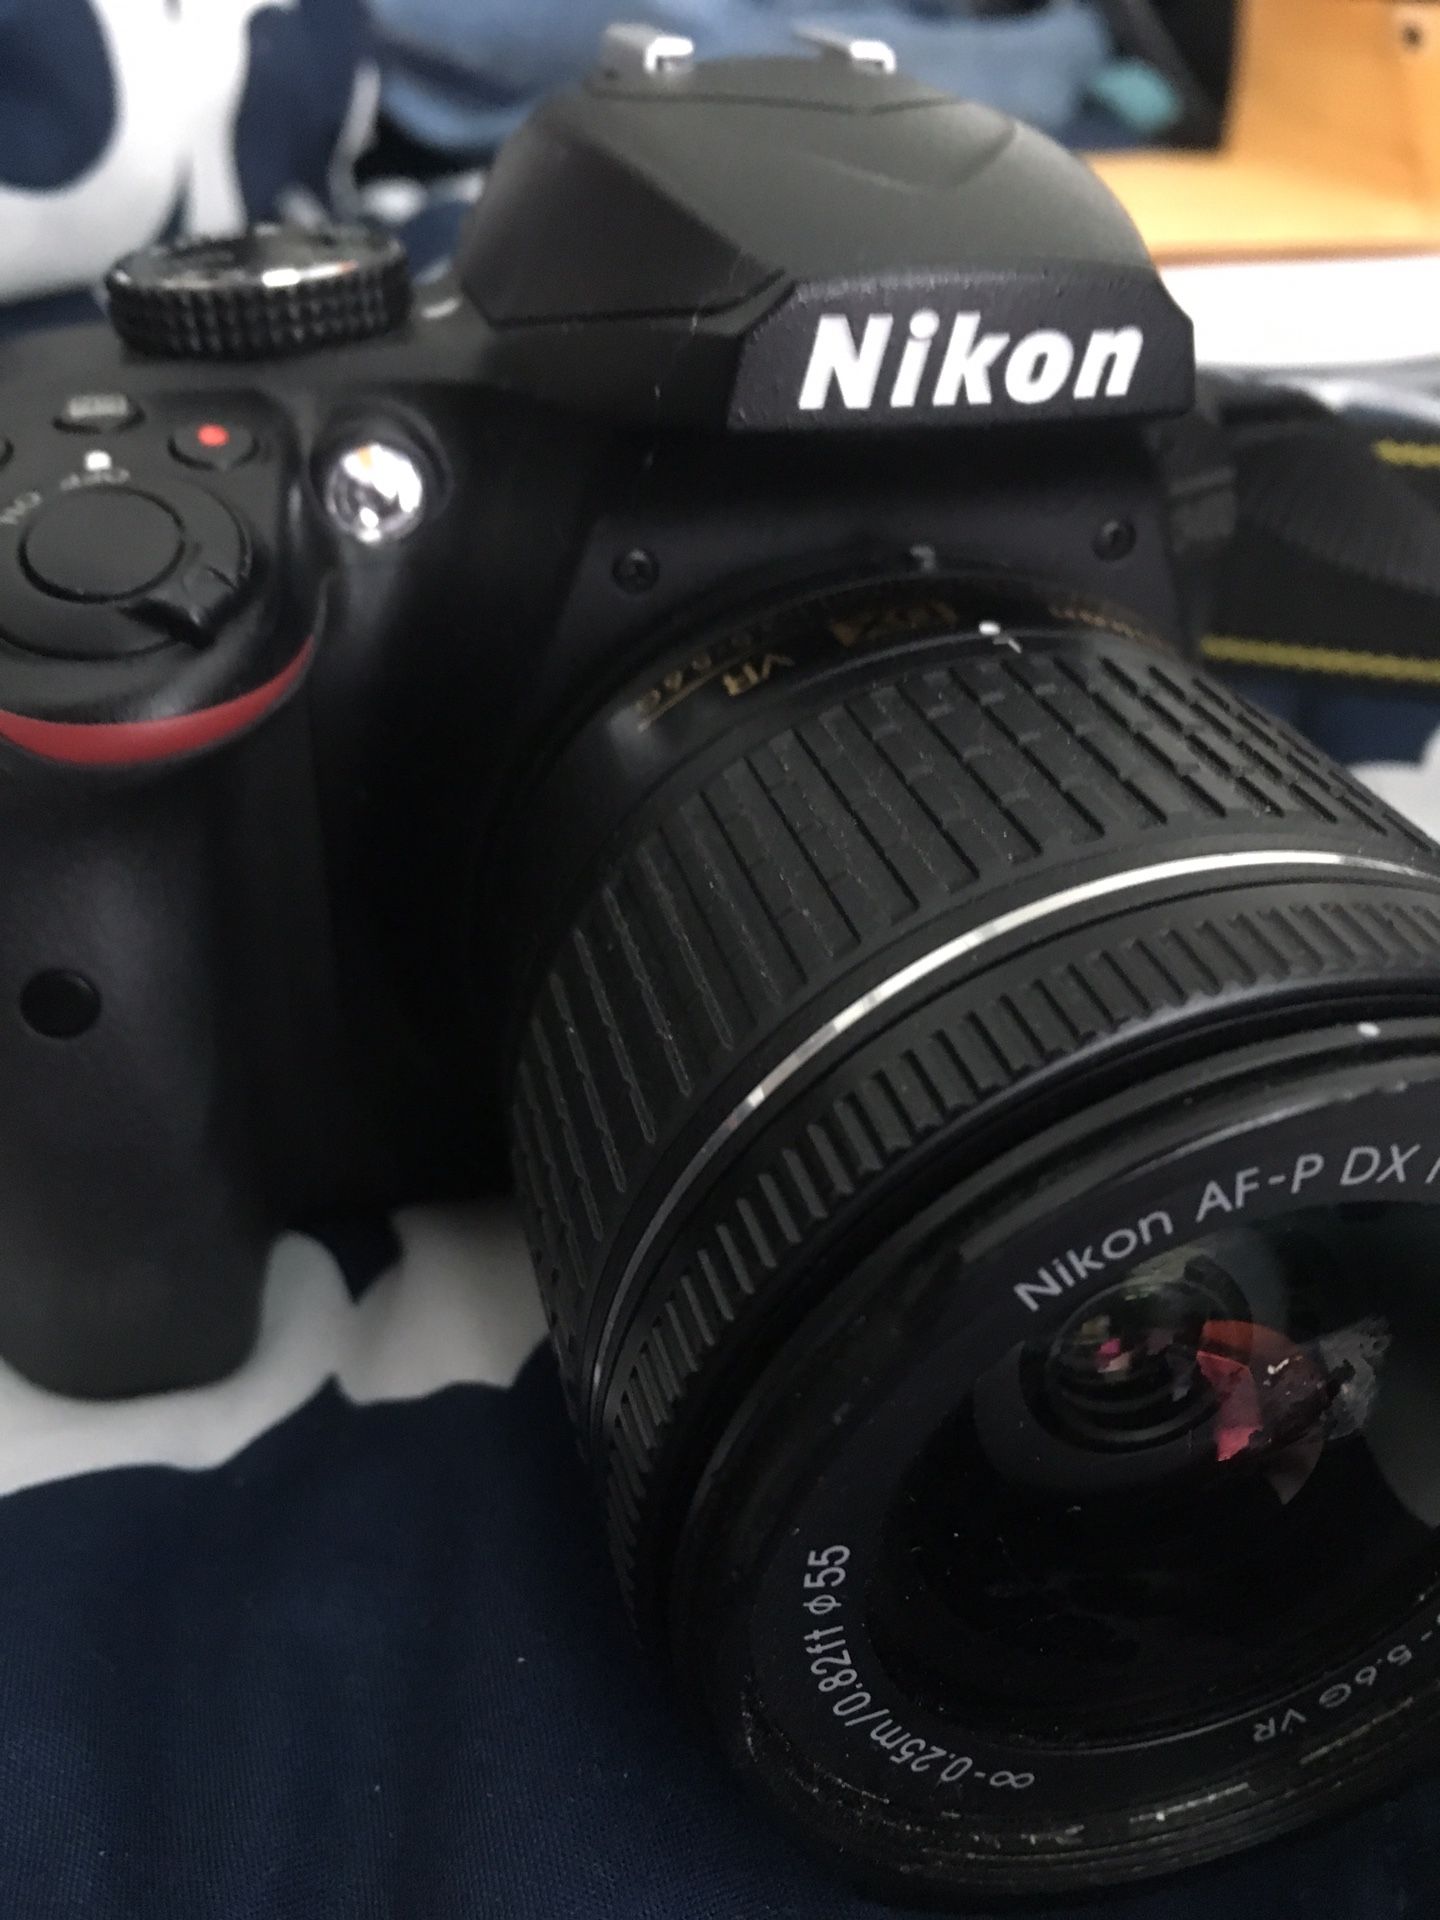 3400 Nikon with 2 lenses